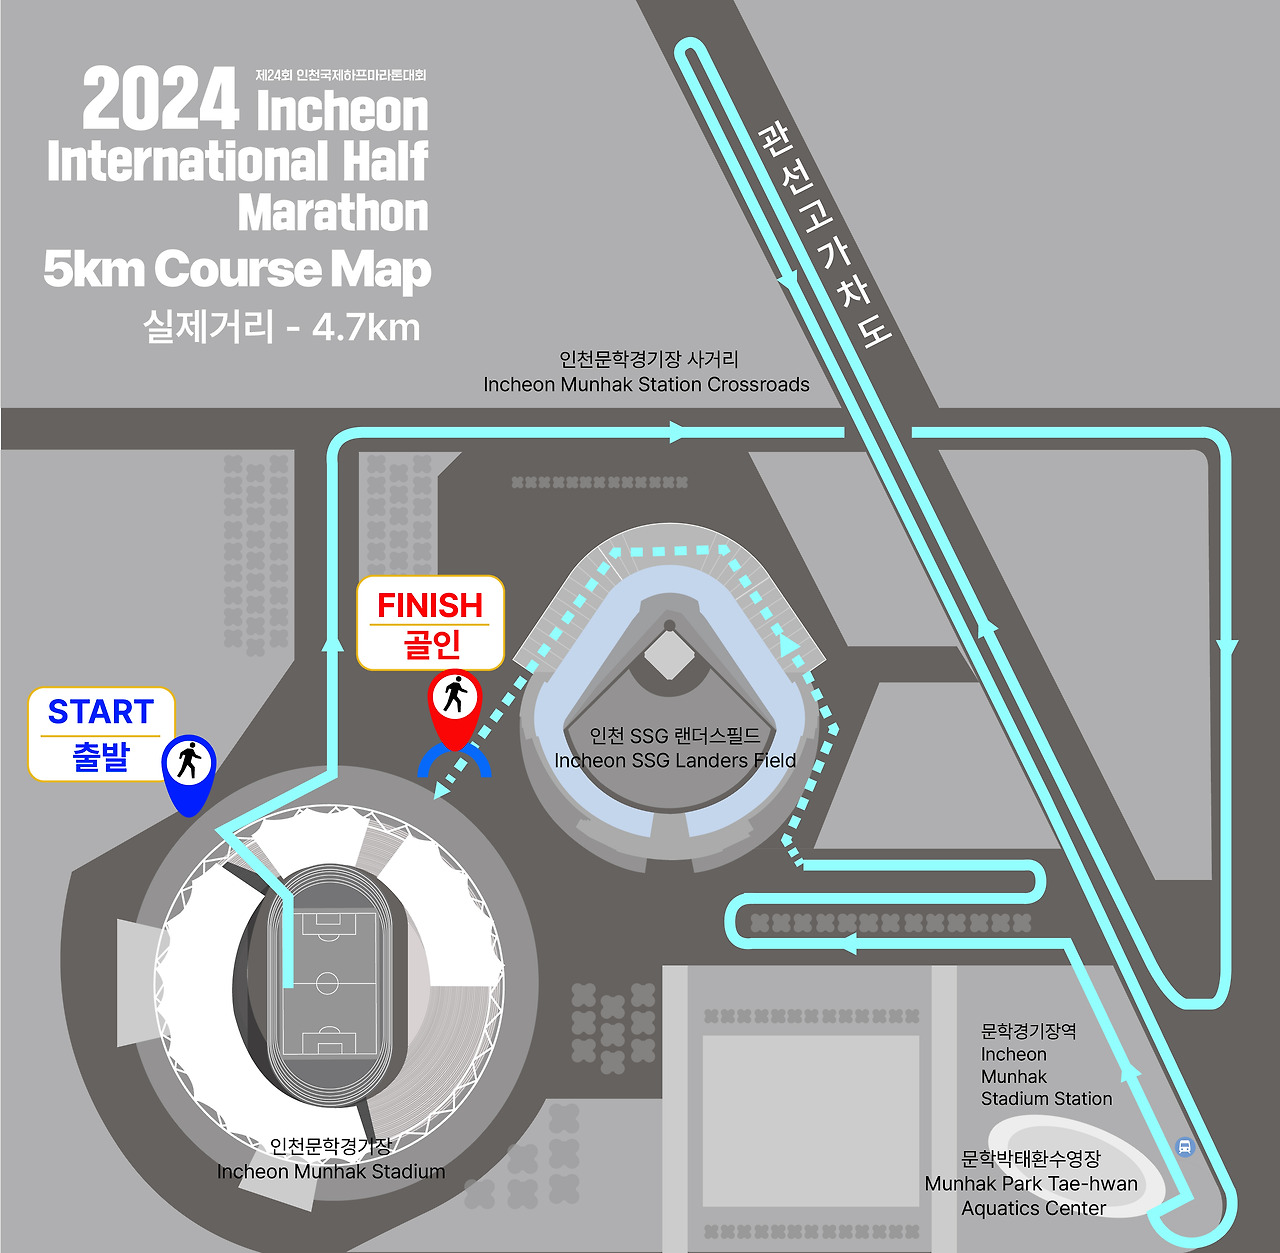 제24회 인천국제하프마라톤 대회 5km 코스 지도